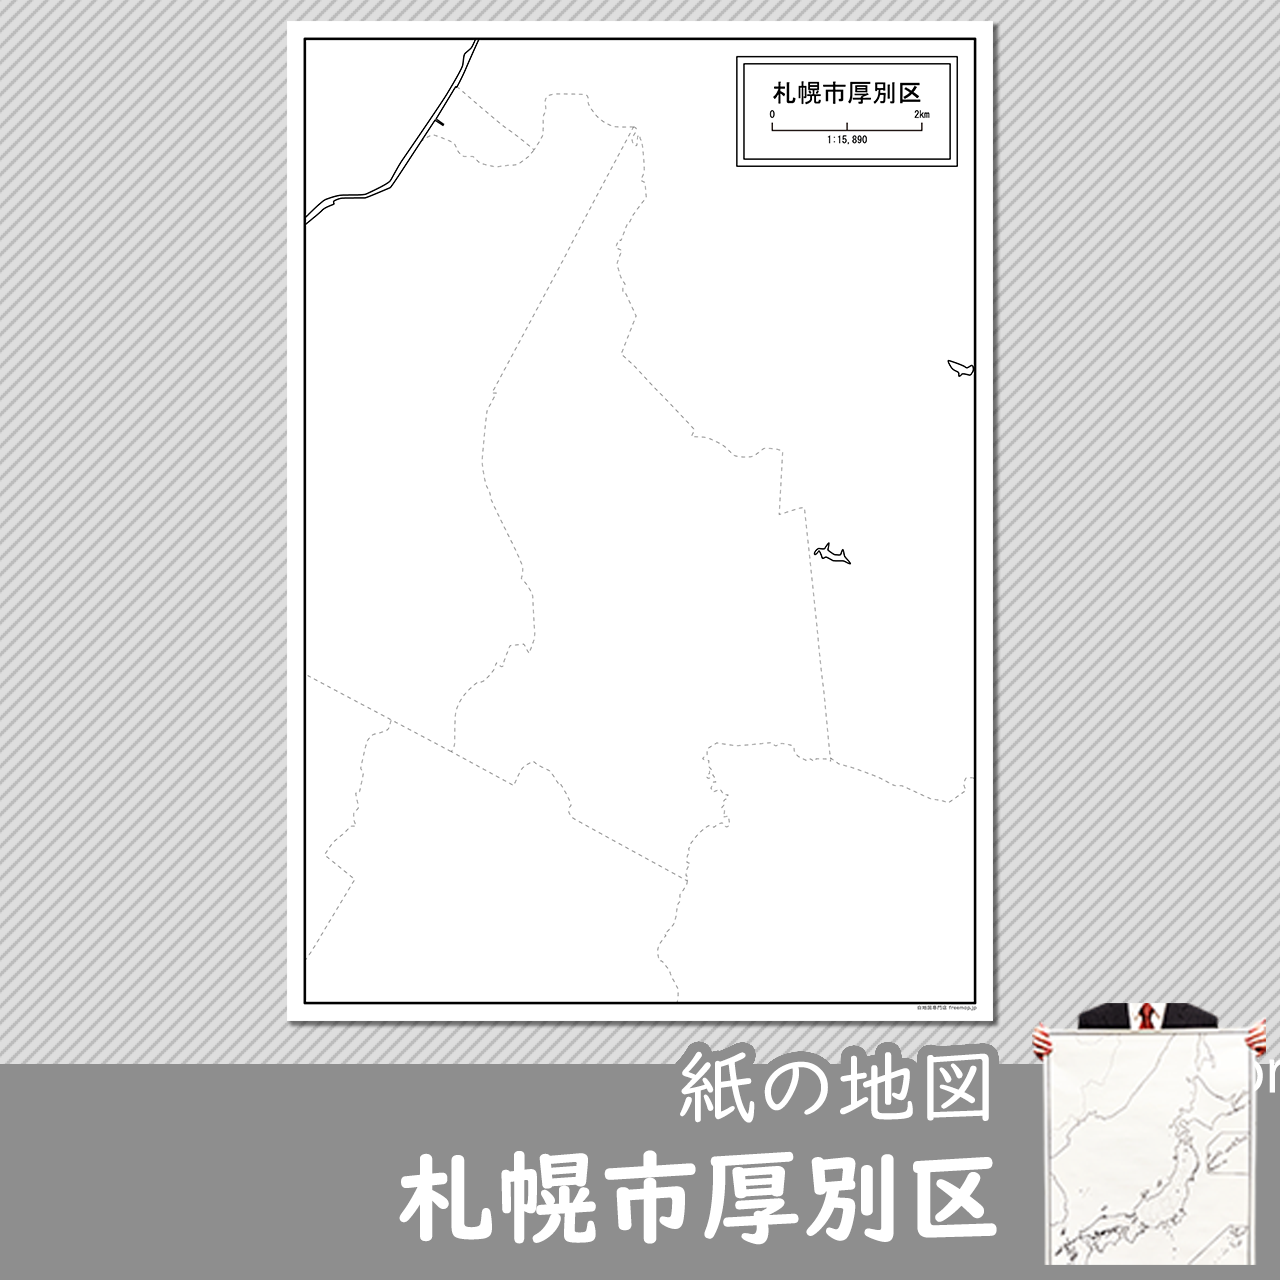 札幌市厚別区の紙の白地図のサムネイル